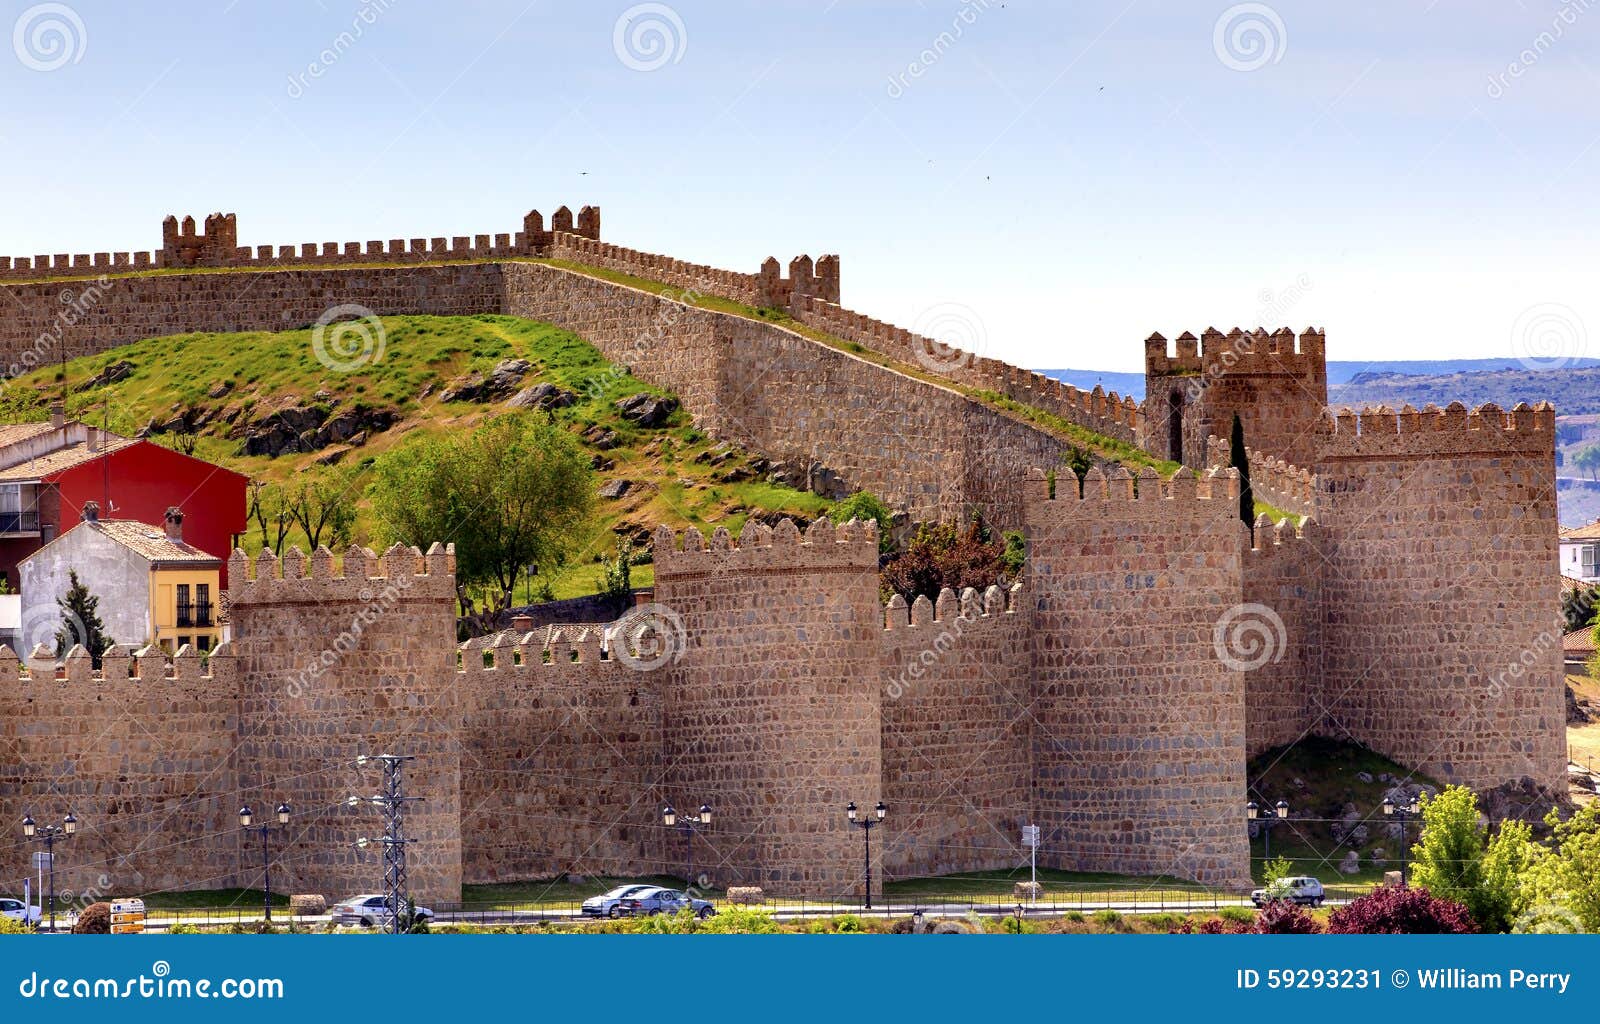 avila castle walls ancient medieval city castile spain